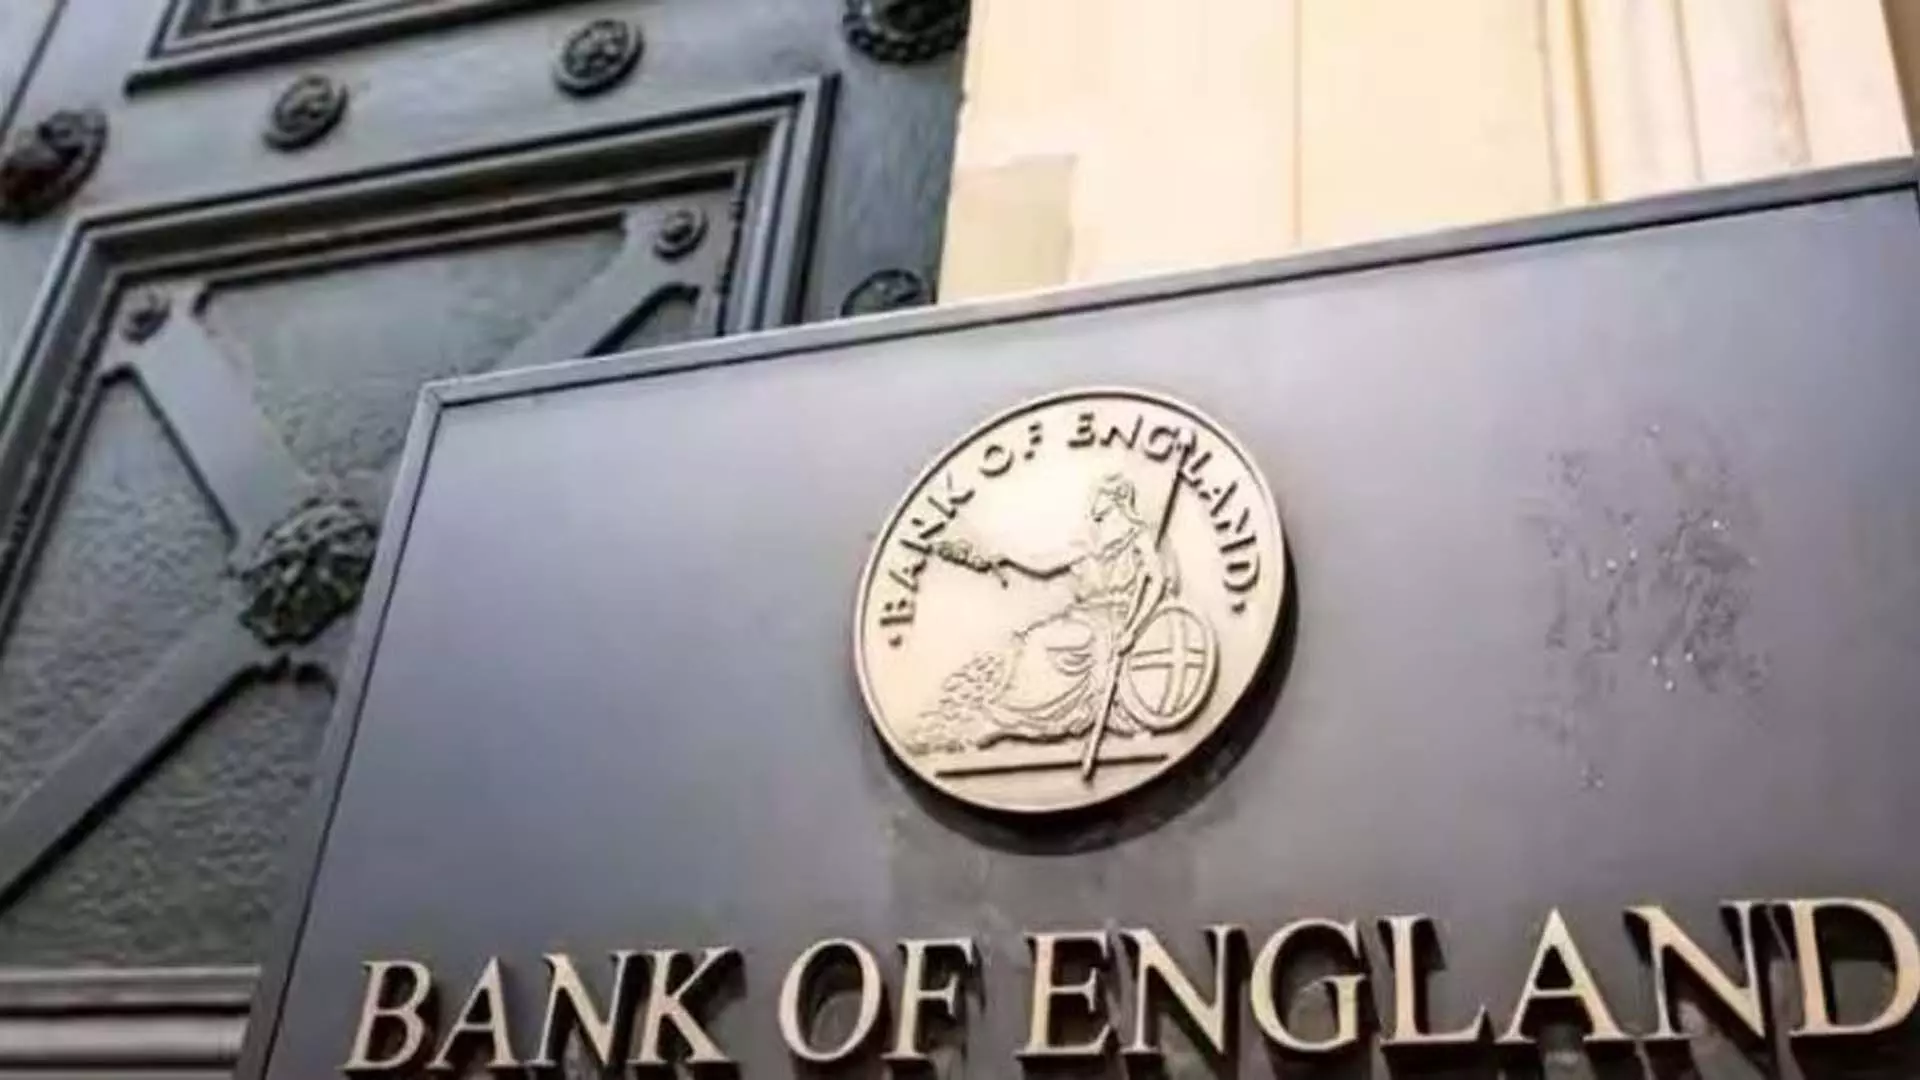 London: बैंक ऑफ इंग्लैंड द्वारा मुख्य ब्याज दर को उच्चतम स्तर 5.25% पर निरंतर रखने की उम्मीद